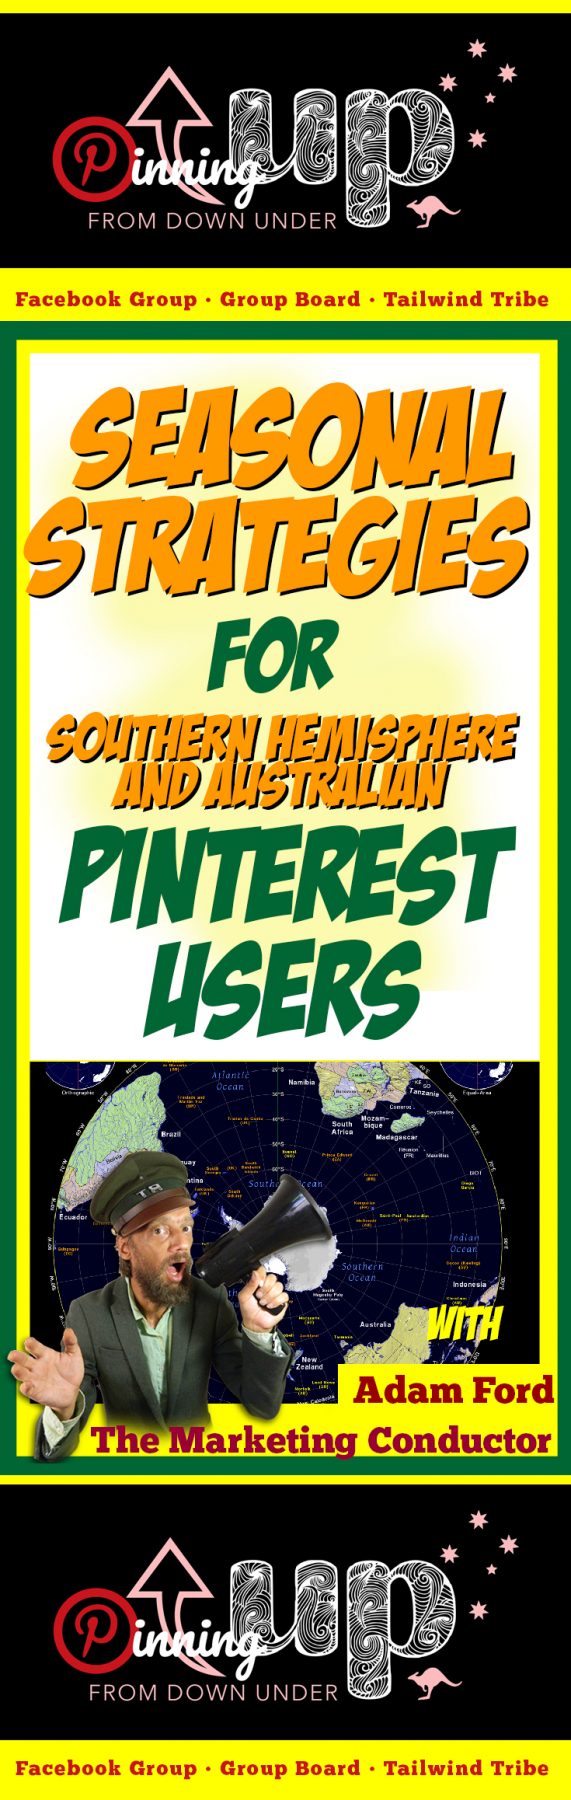 Pinterest, Social Media Marketing